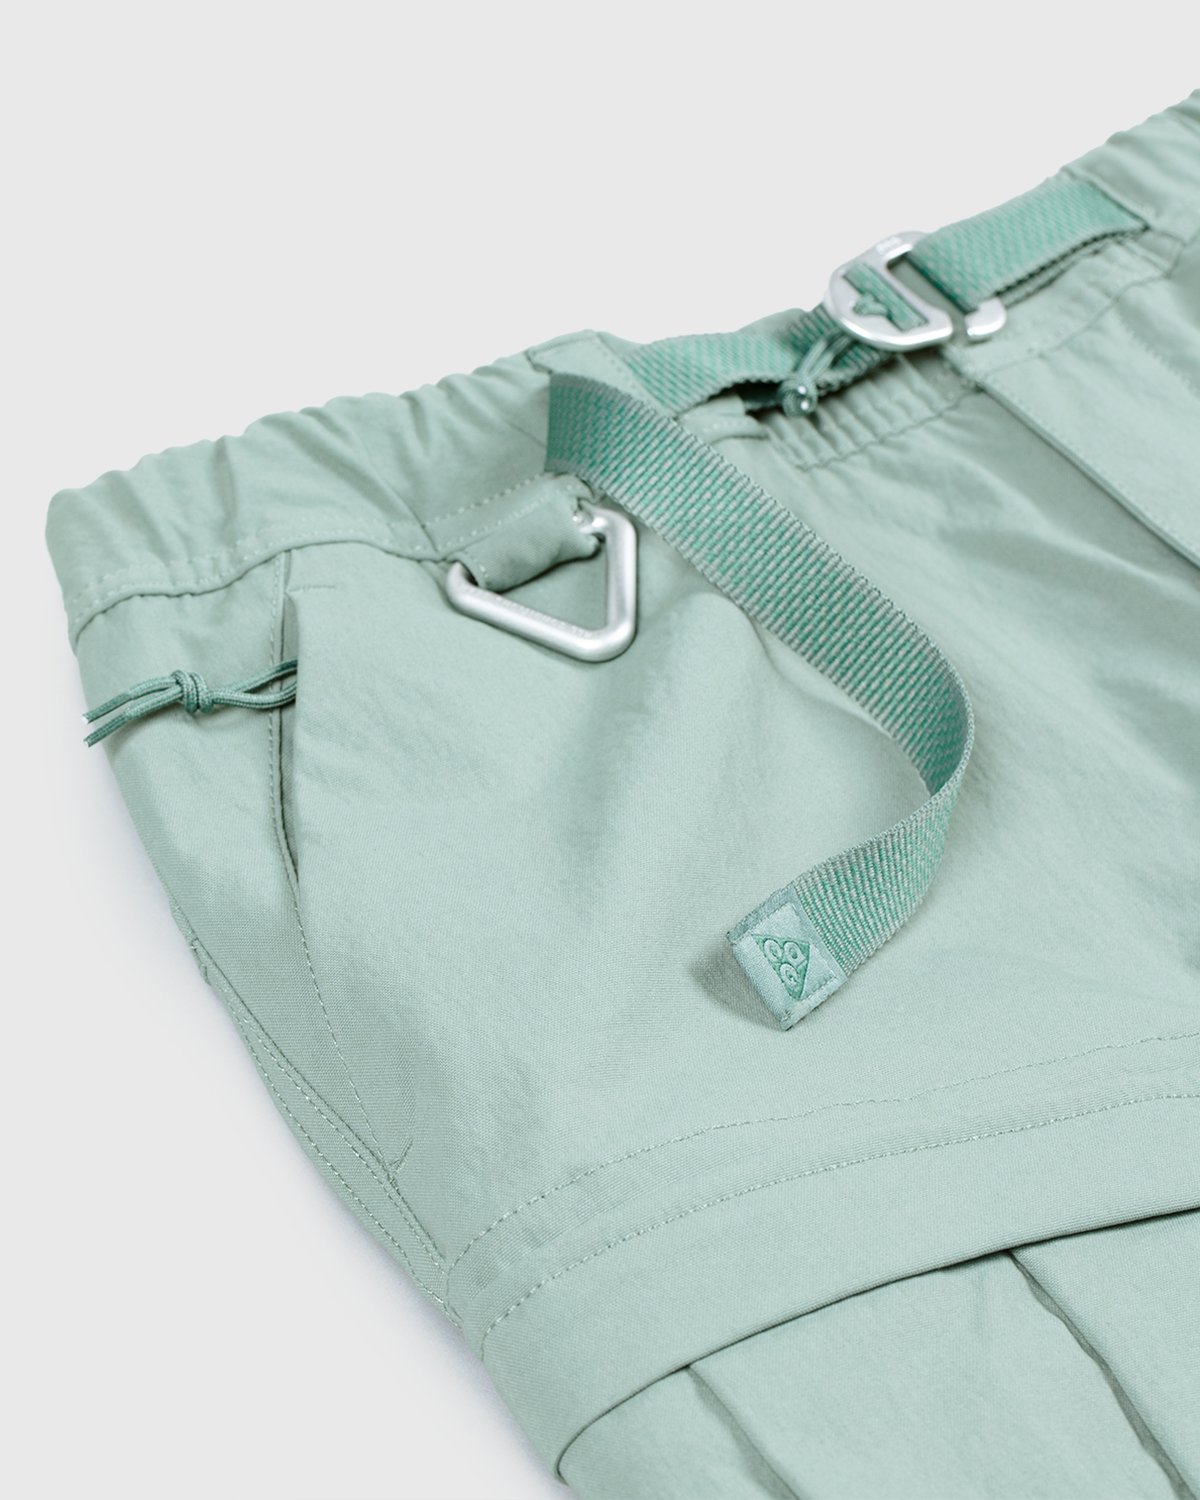 Nike ACG - M NRG ACG Smith Smt Cargo Pant Green - Clothing - Green - Image 3